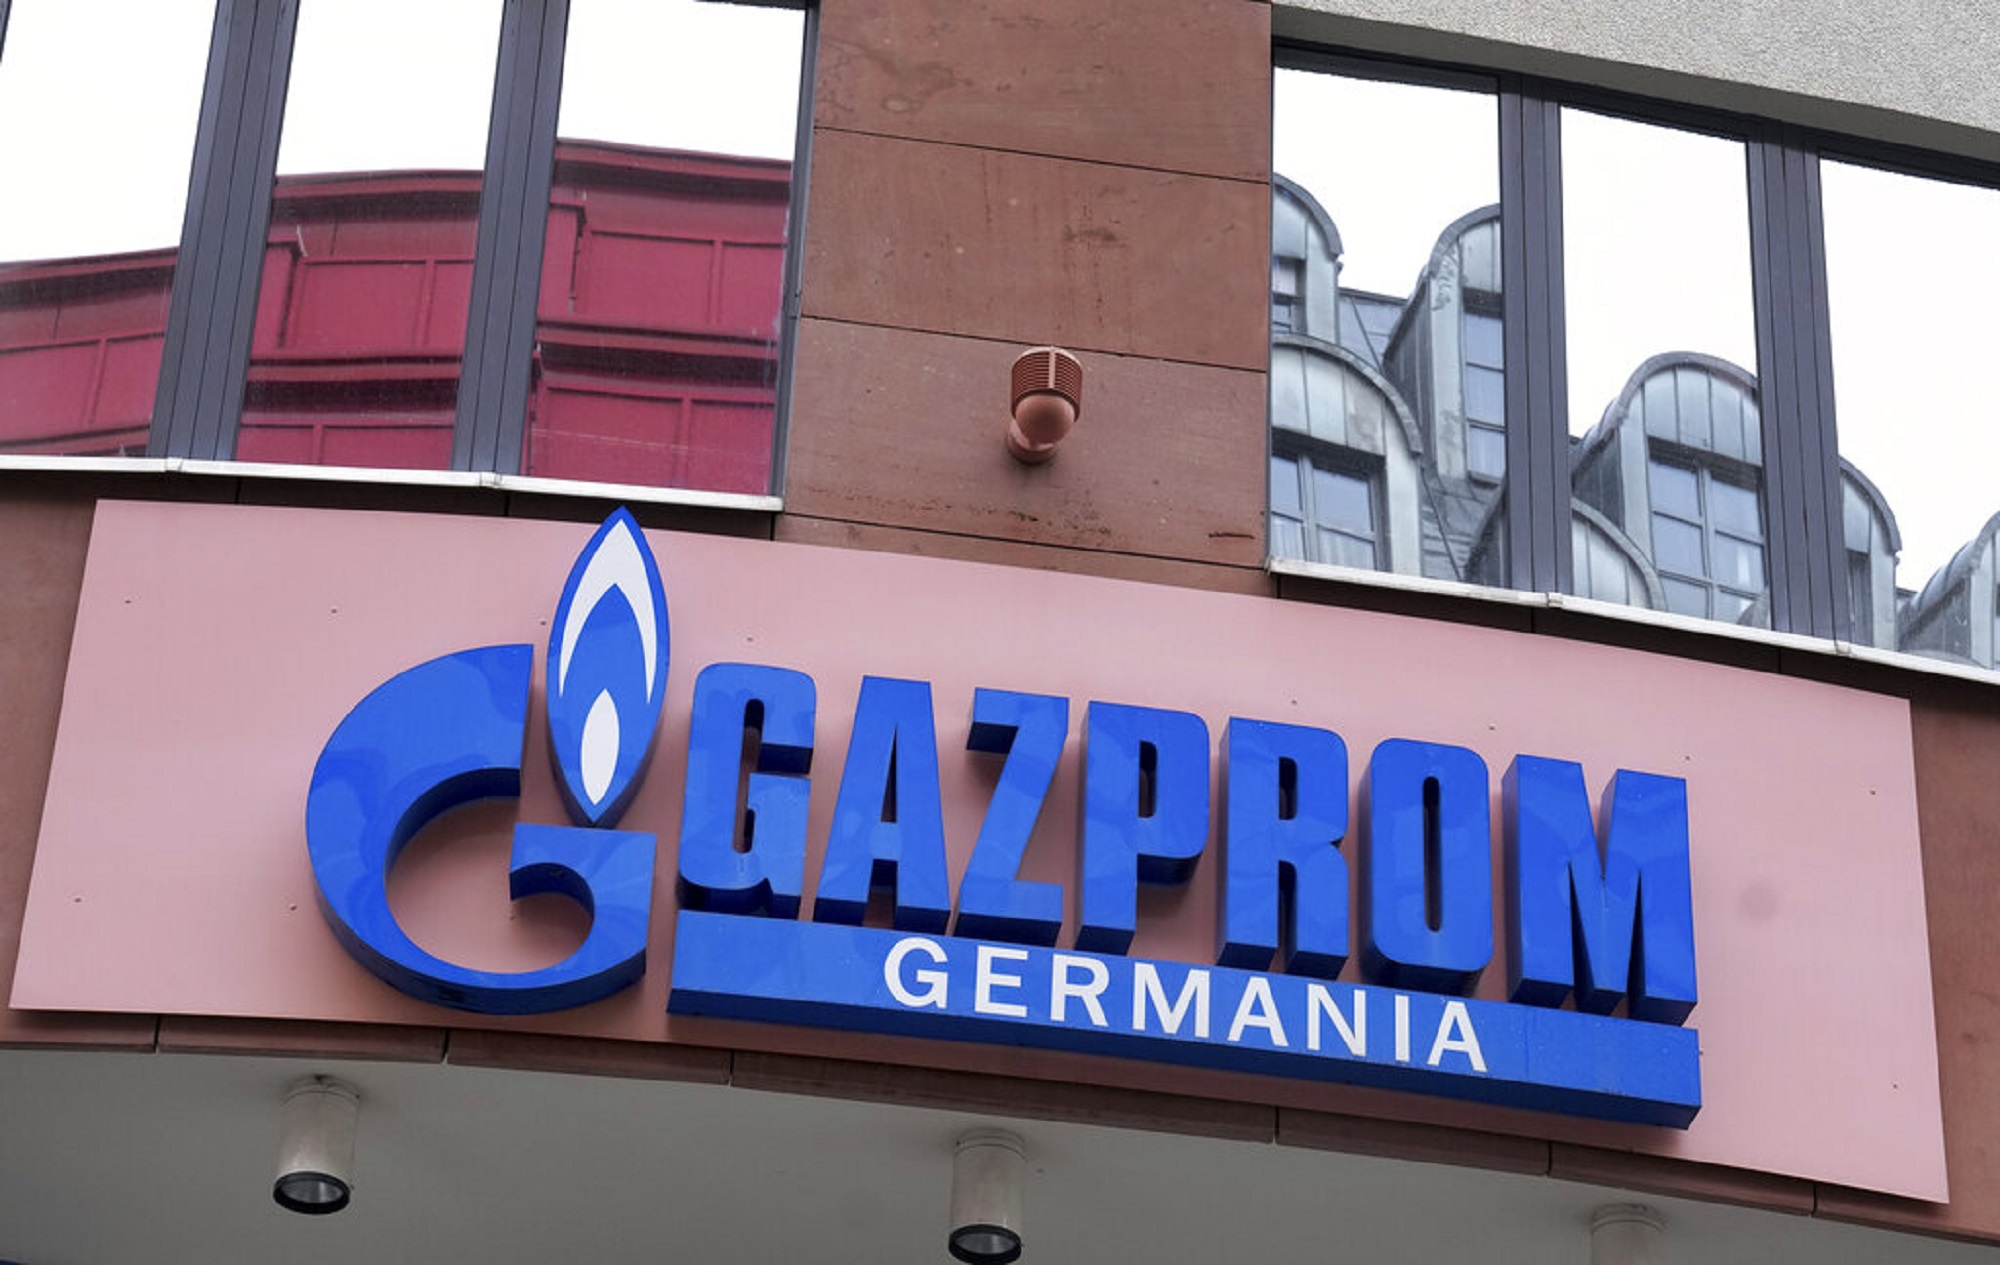 Η Gazprom Germania στο δρόμο της κρατικοποίησης